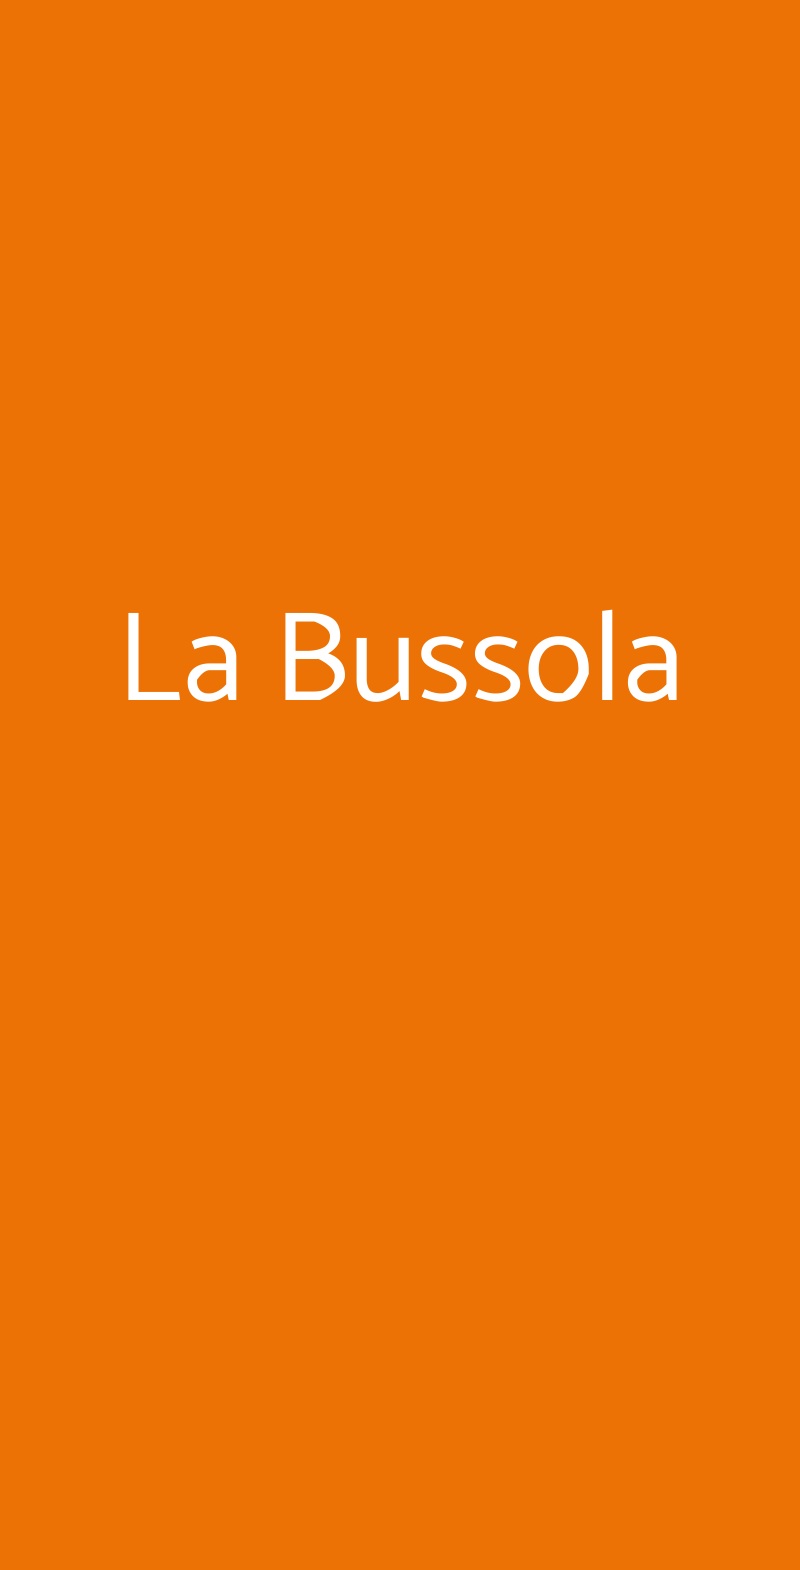 La Bussola Priolo Gargallo menù 1 pagina